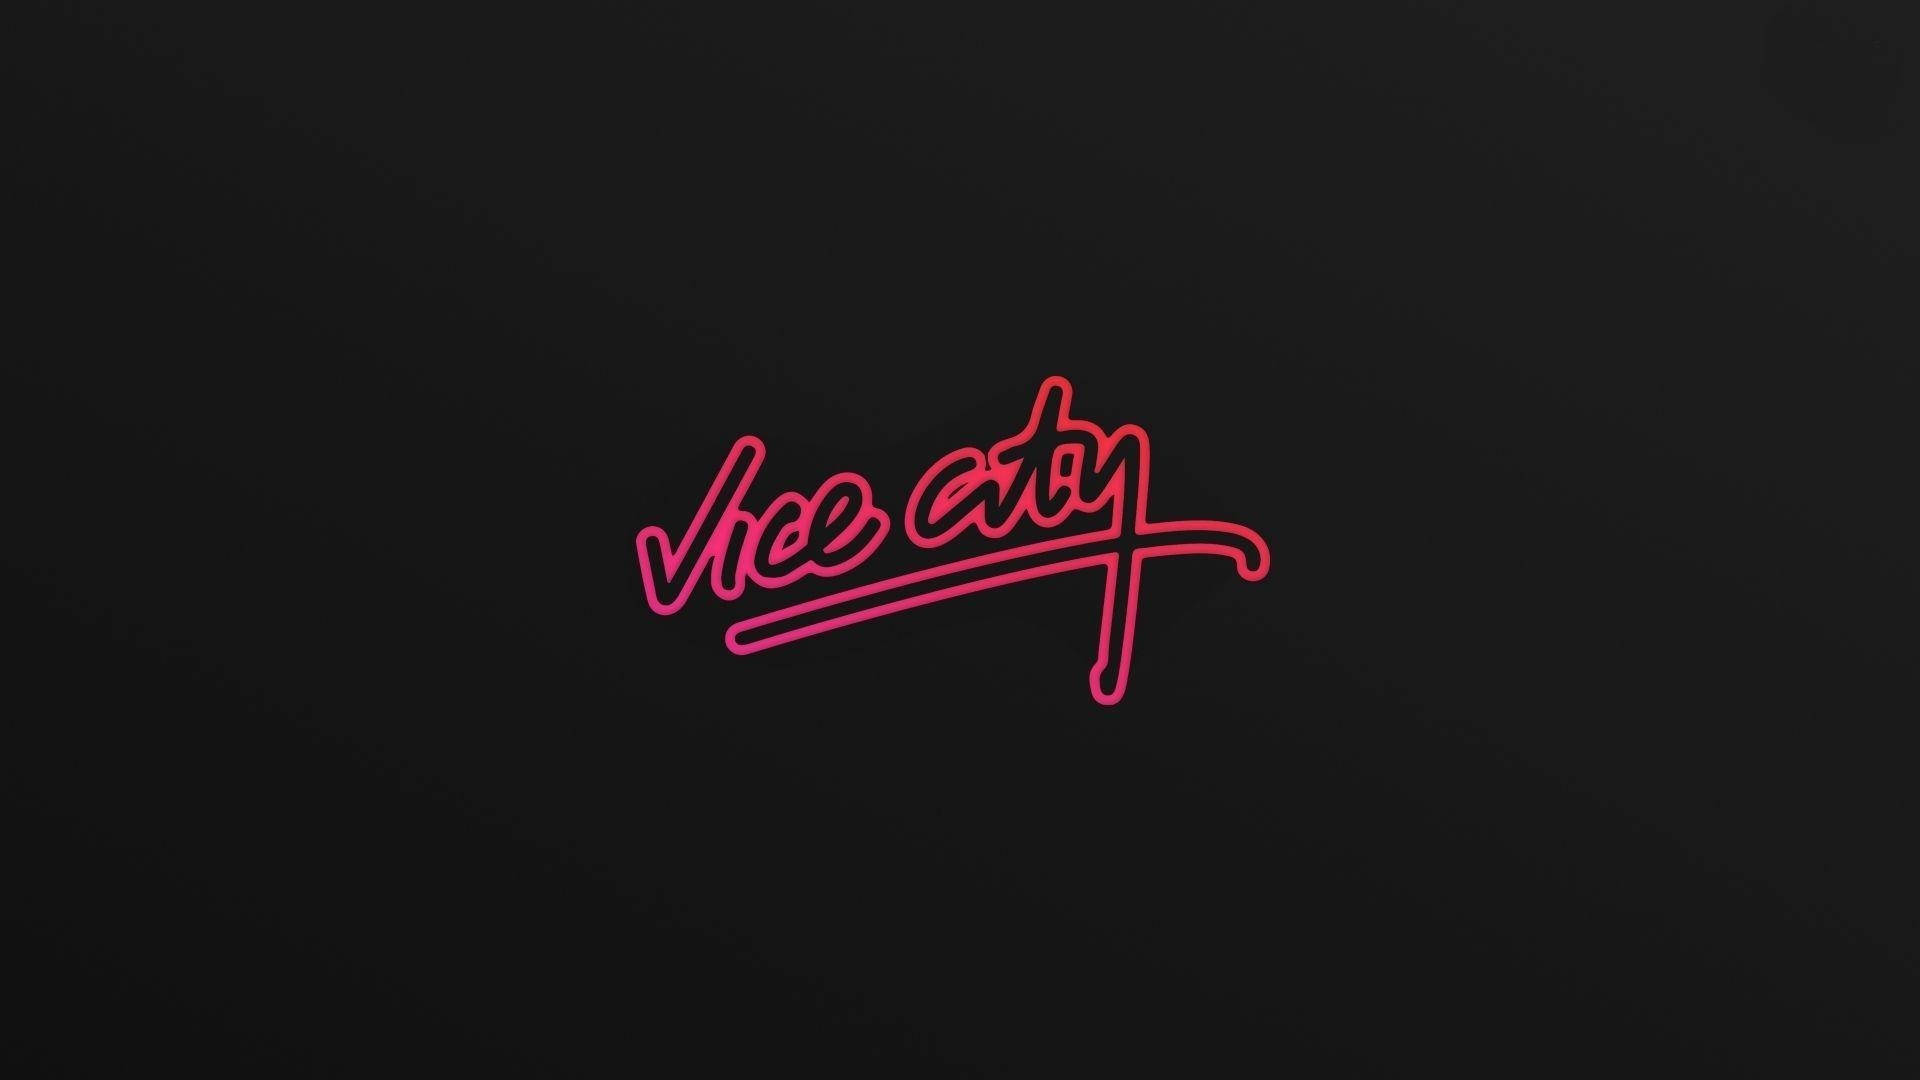 Gta Vice City Retro Game Title Wallpaper